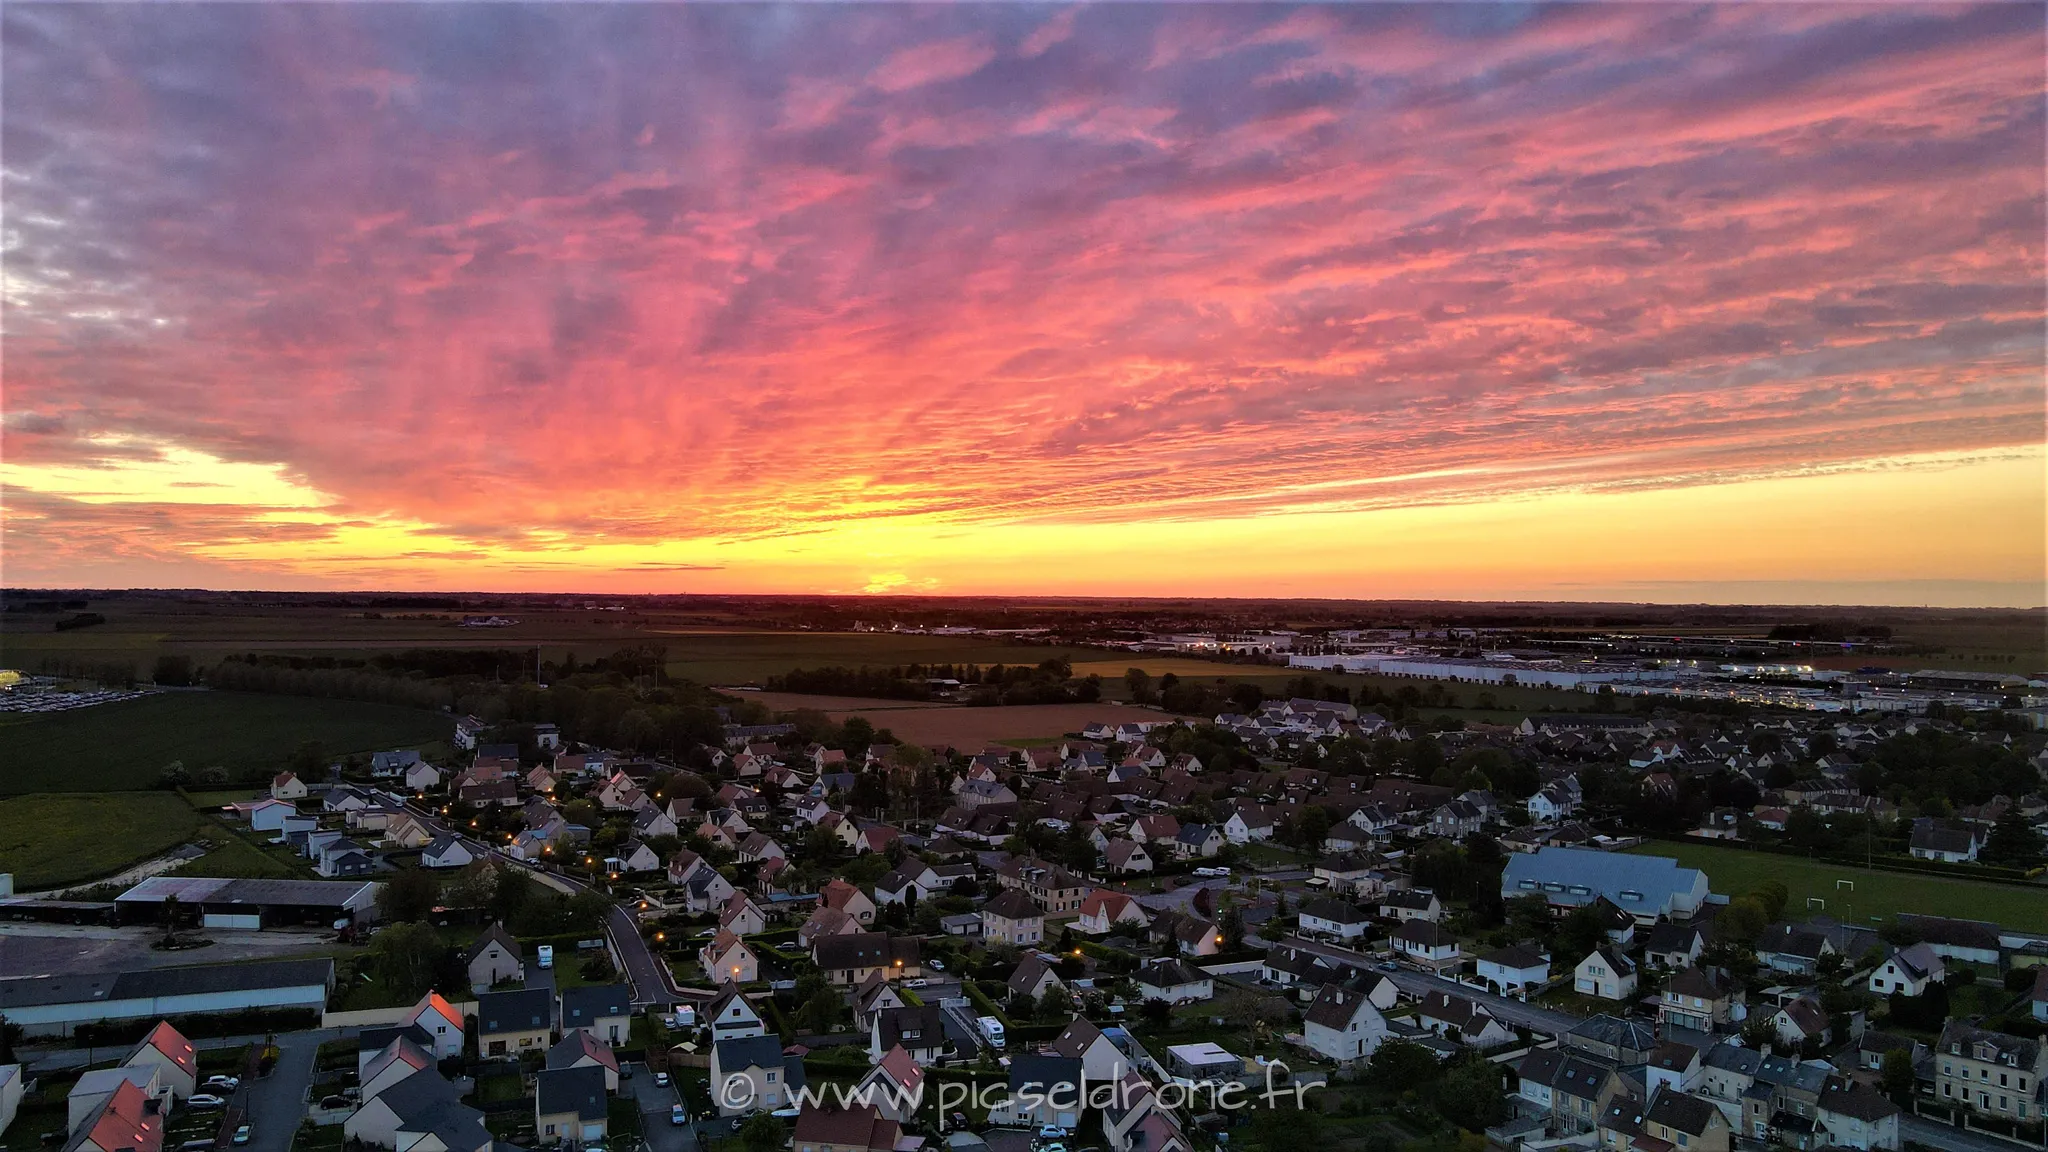 Prise de vue aérienne, photo aérienne d'un coucher de soleil, Carpiquet, télépilote drone, pilote drone, PICSEL DRONE, CAEN